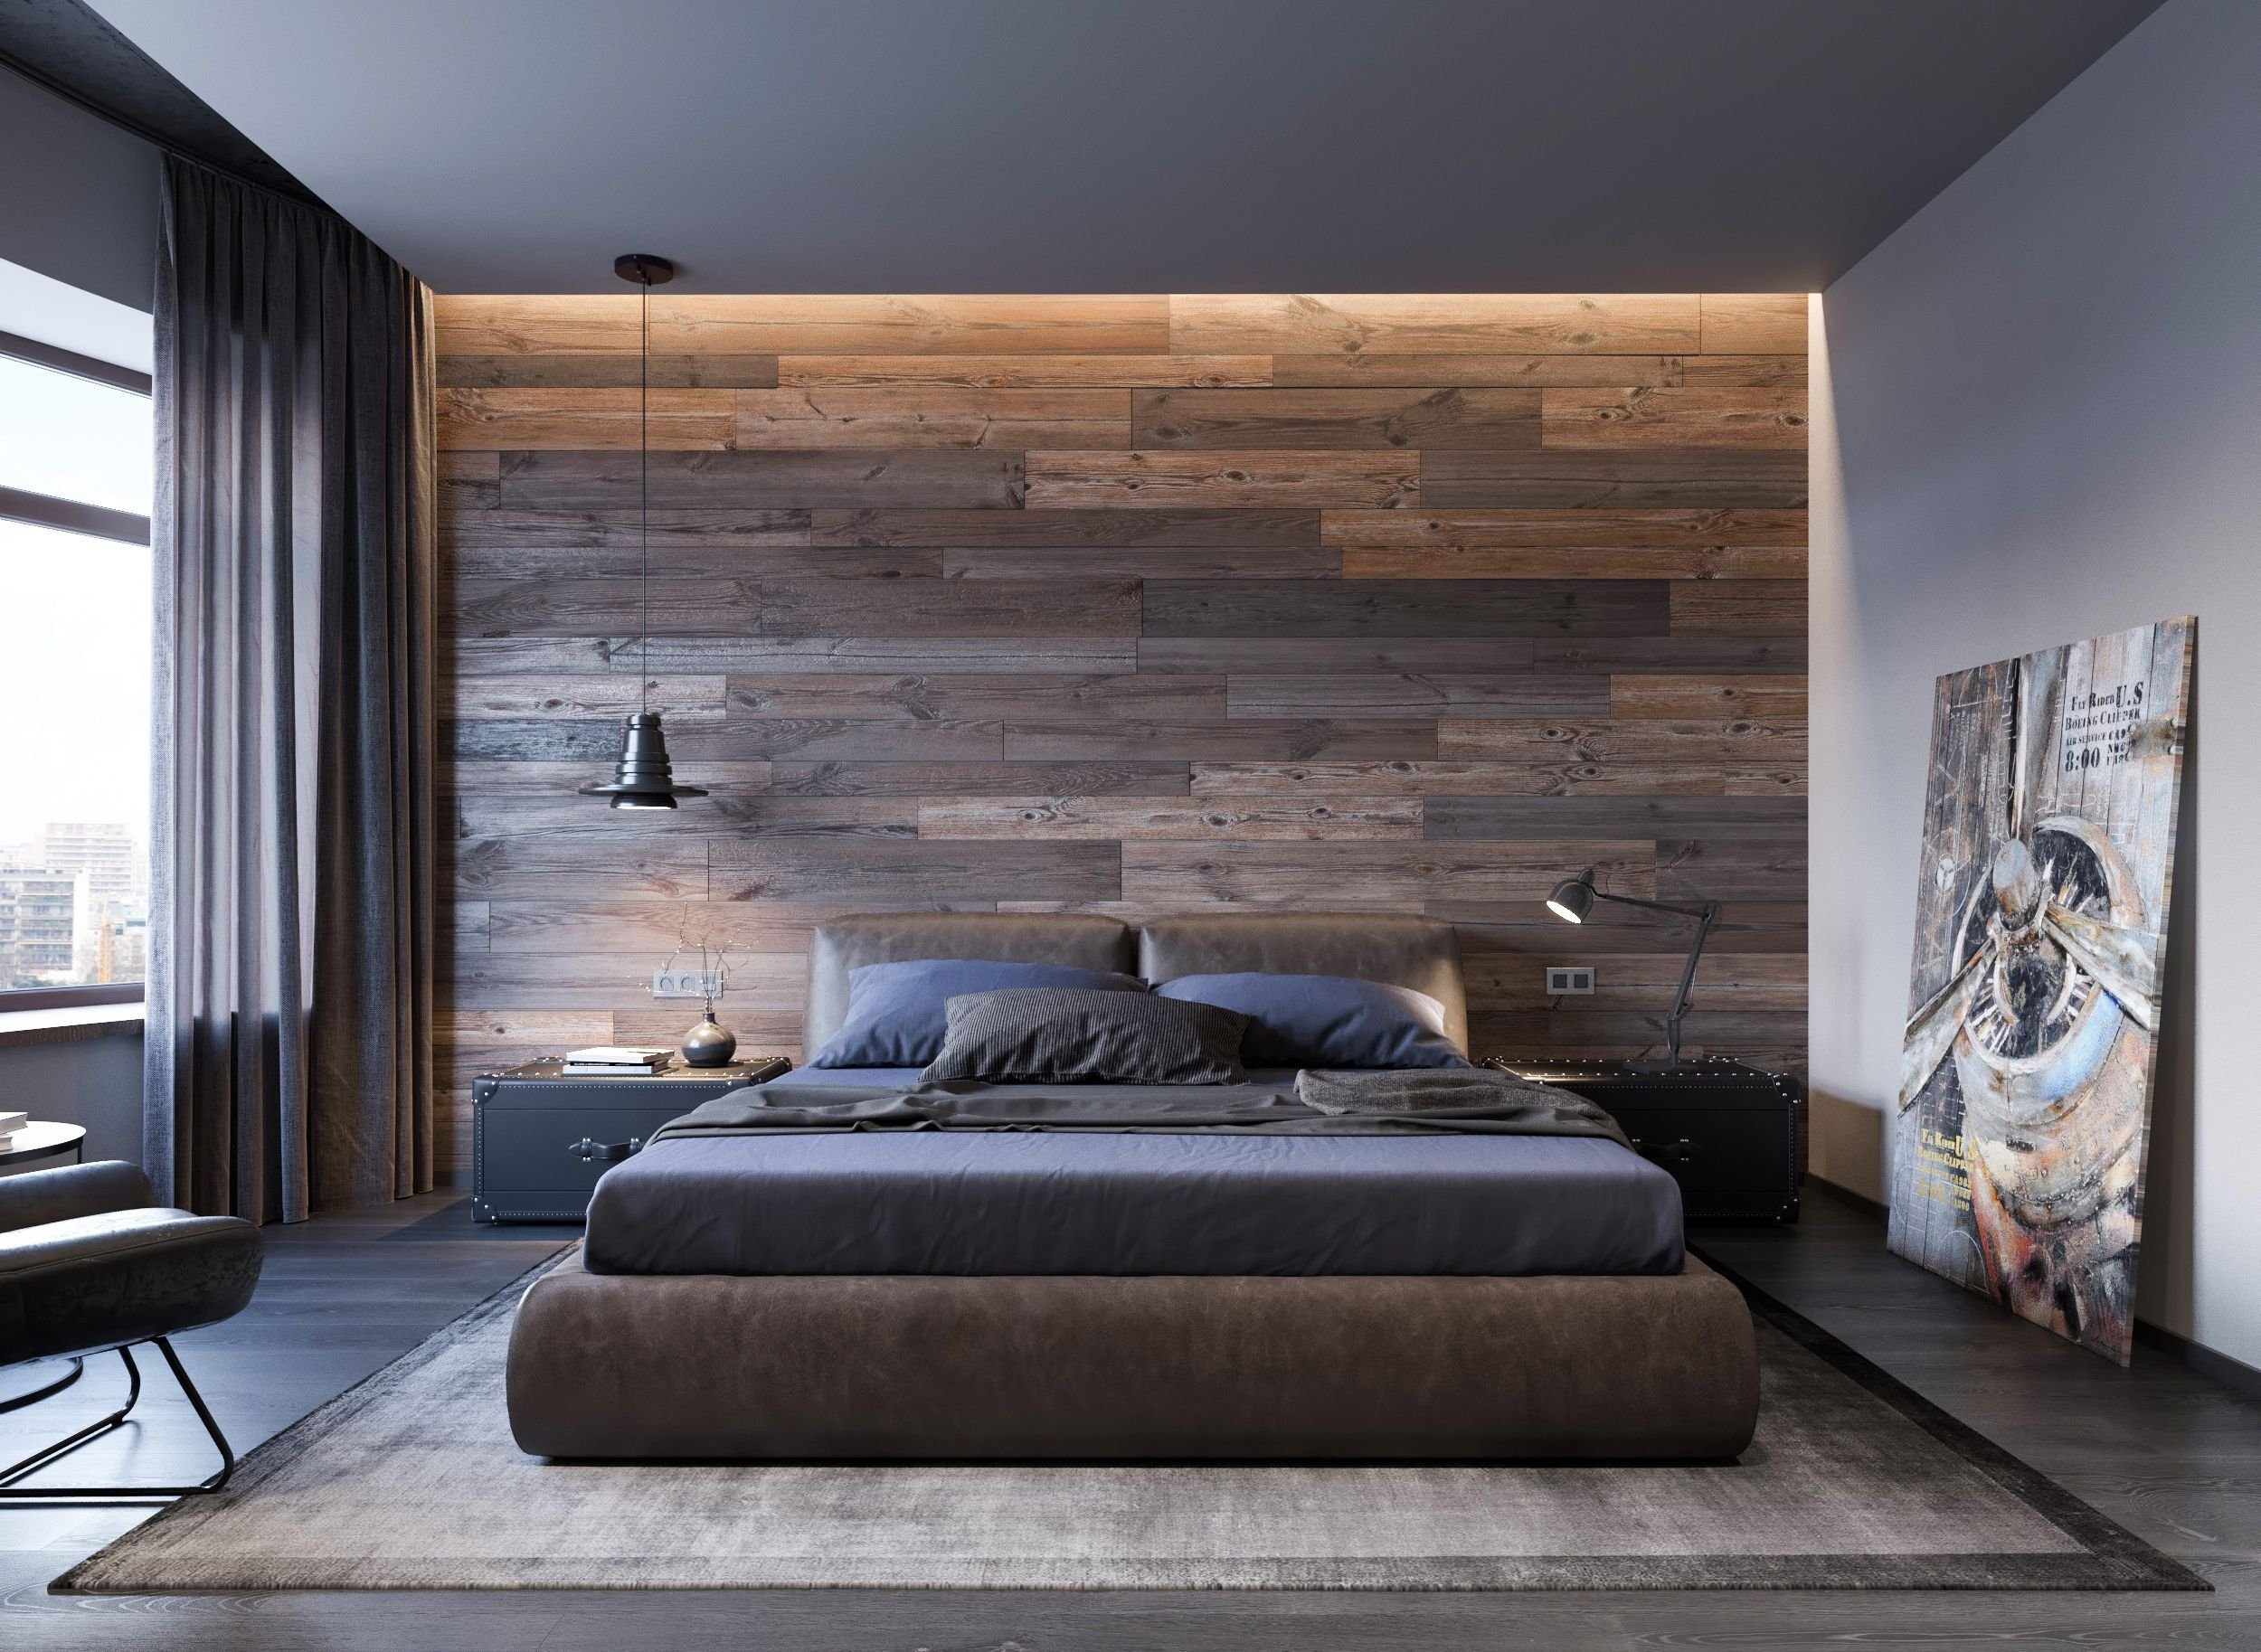 Оформление стены в спальне над кроватью — как украсить стены в спальне у изголовья кровати